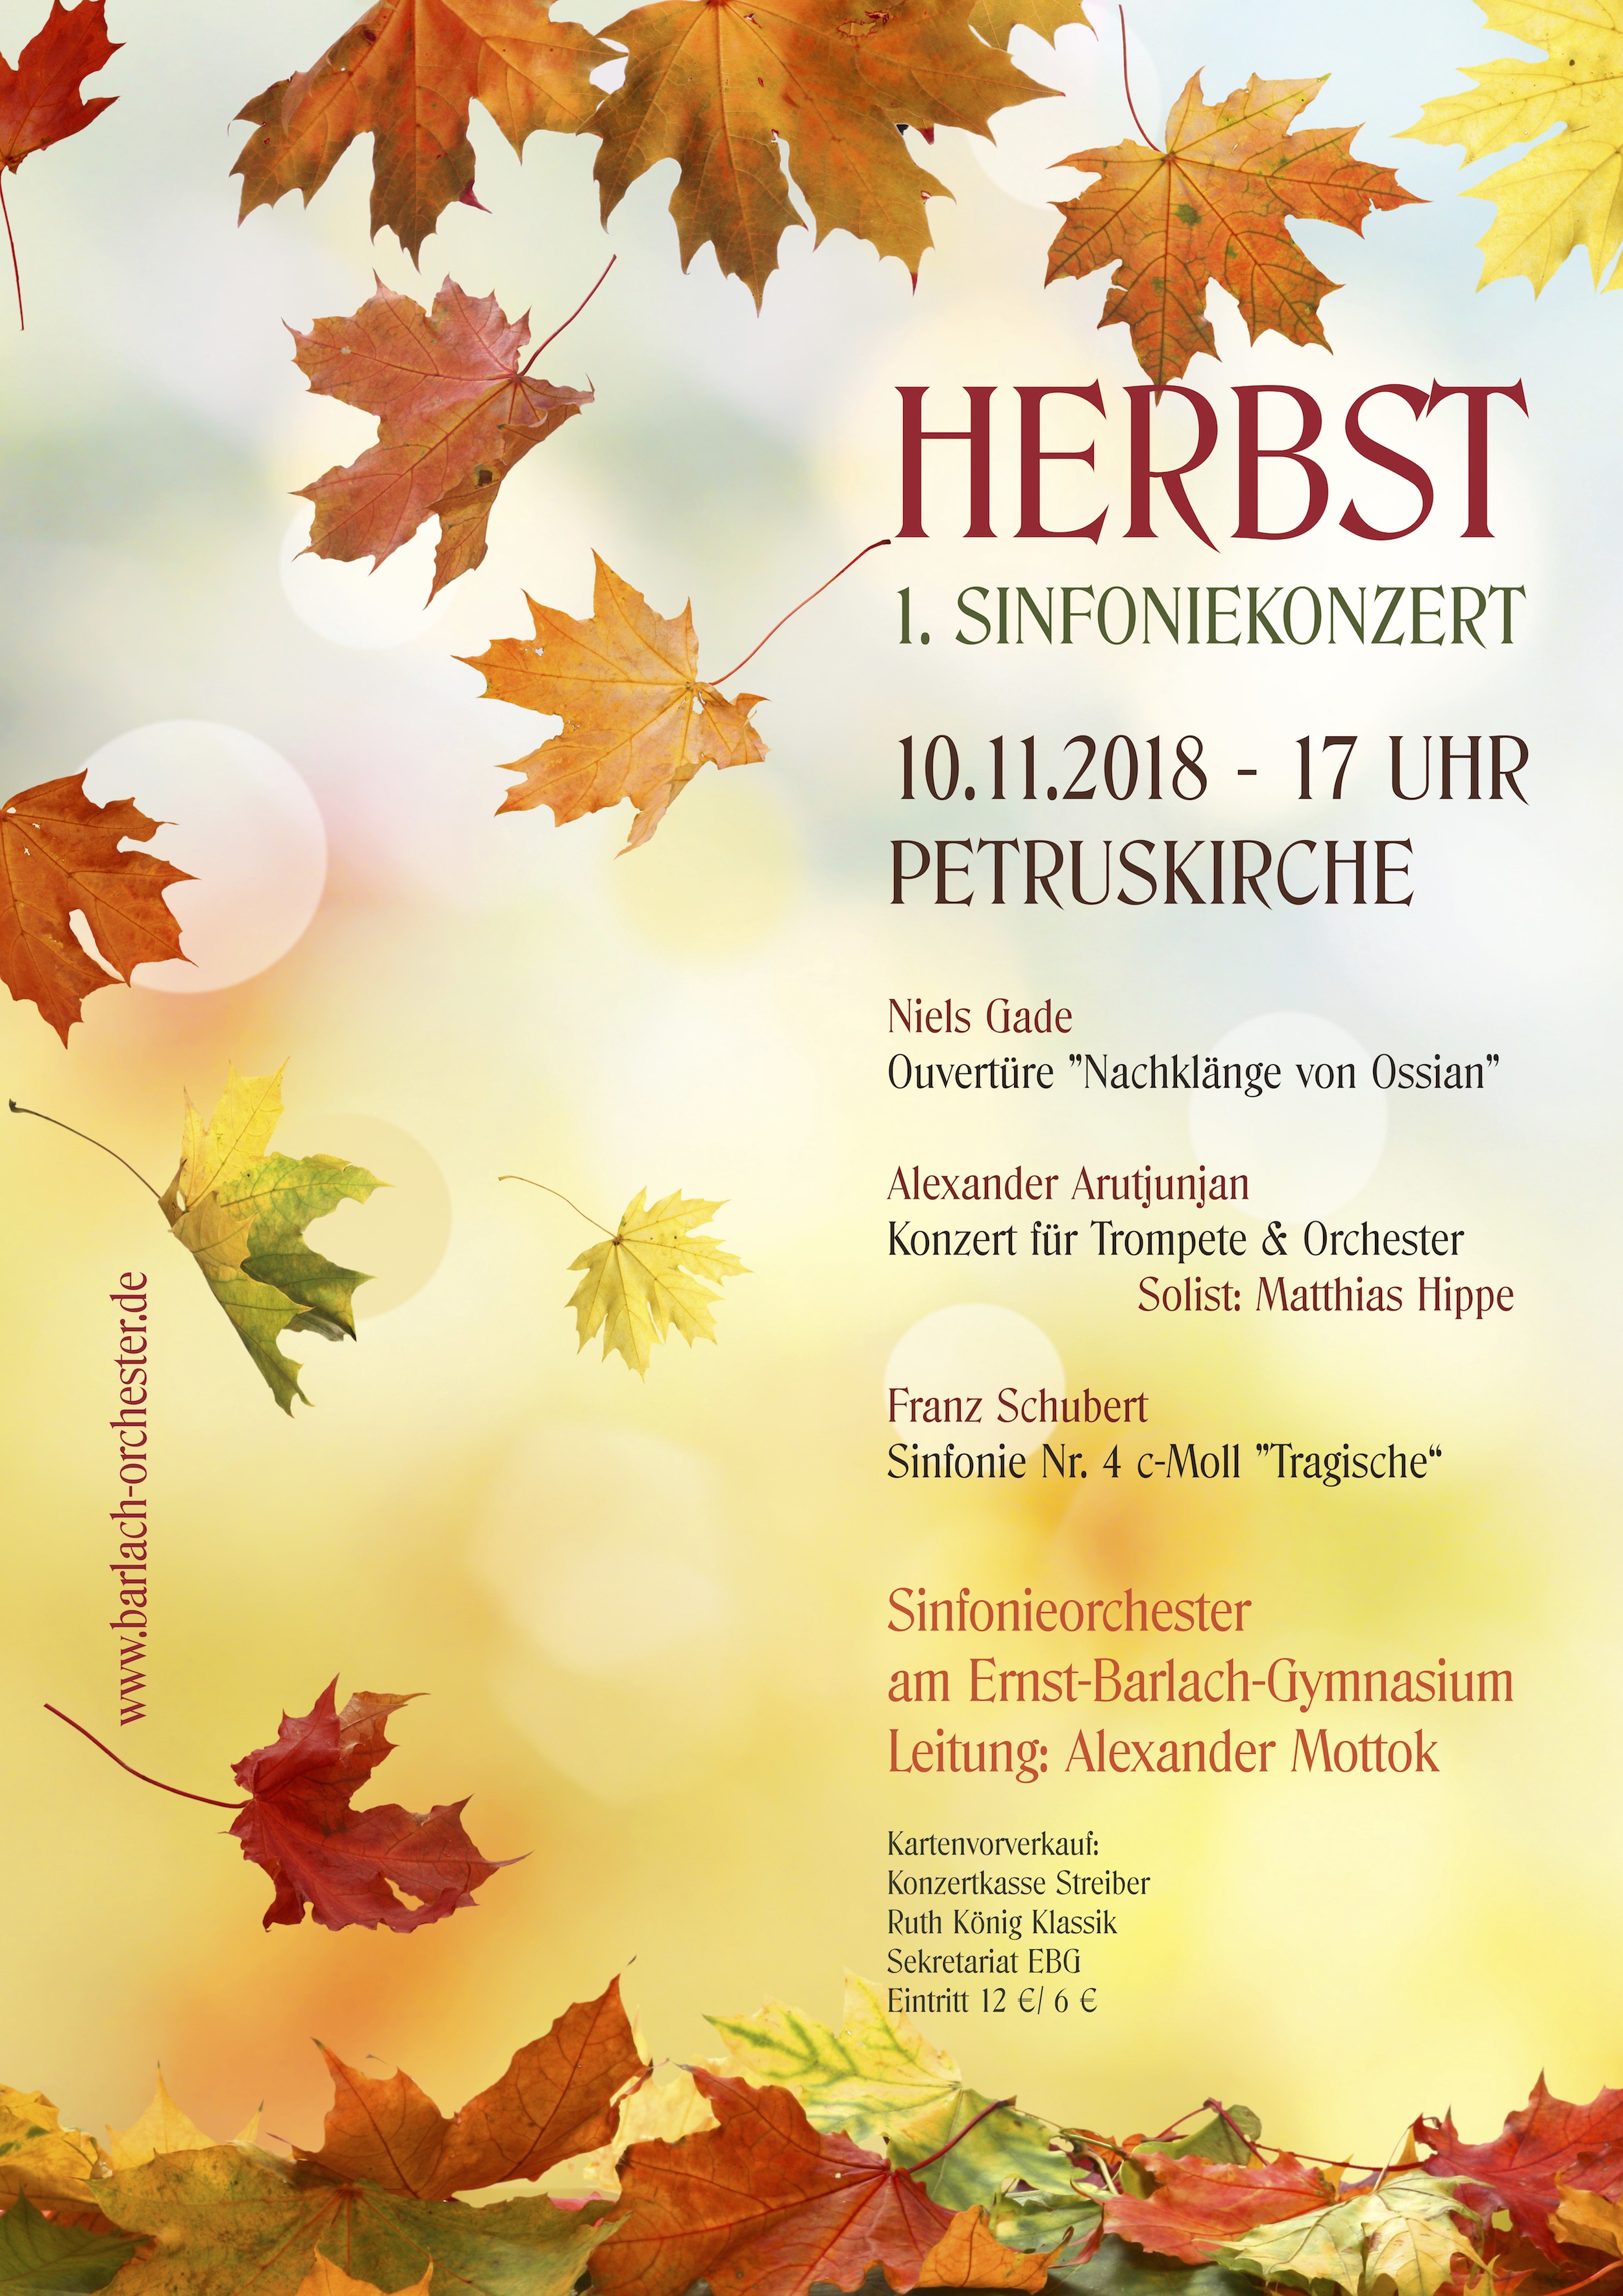 1. Sinfoniekonzert 10.11.2018 17 Uhr Petruskirche Kiel 22Herbst22